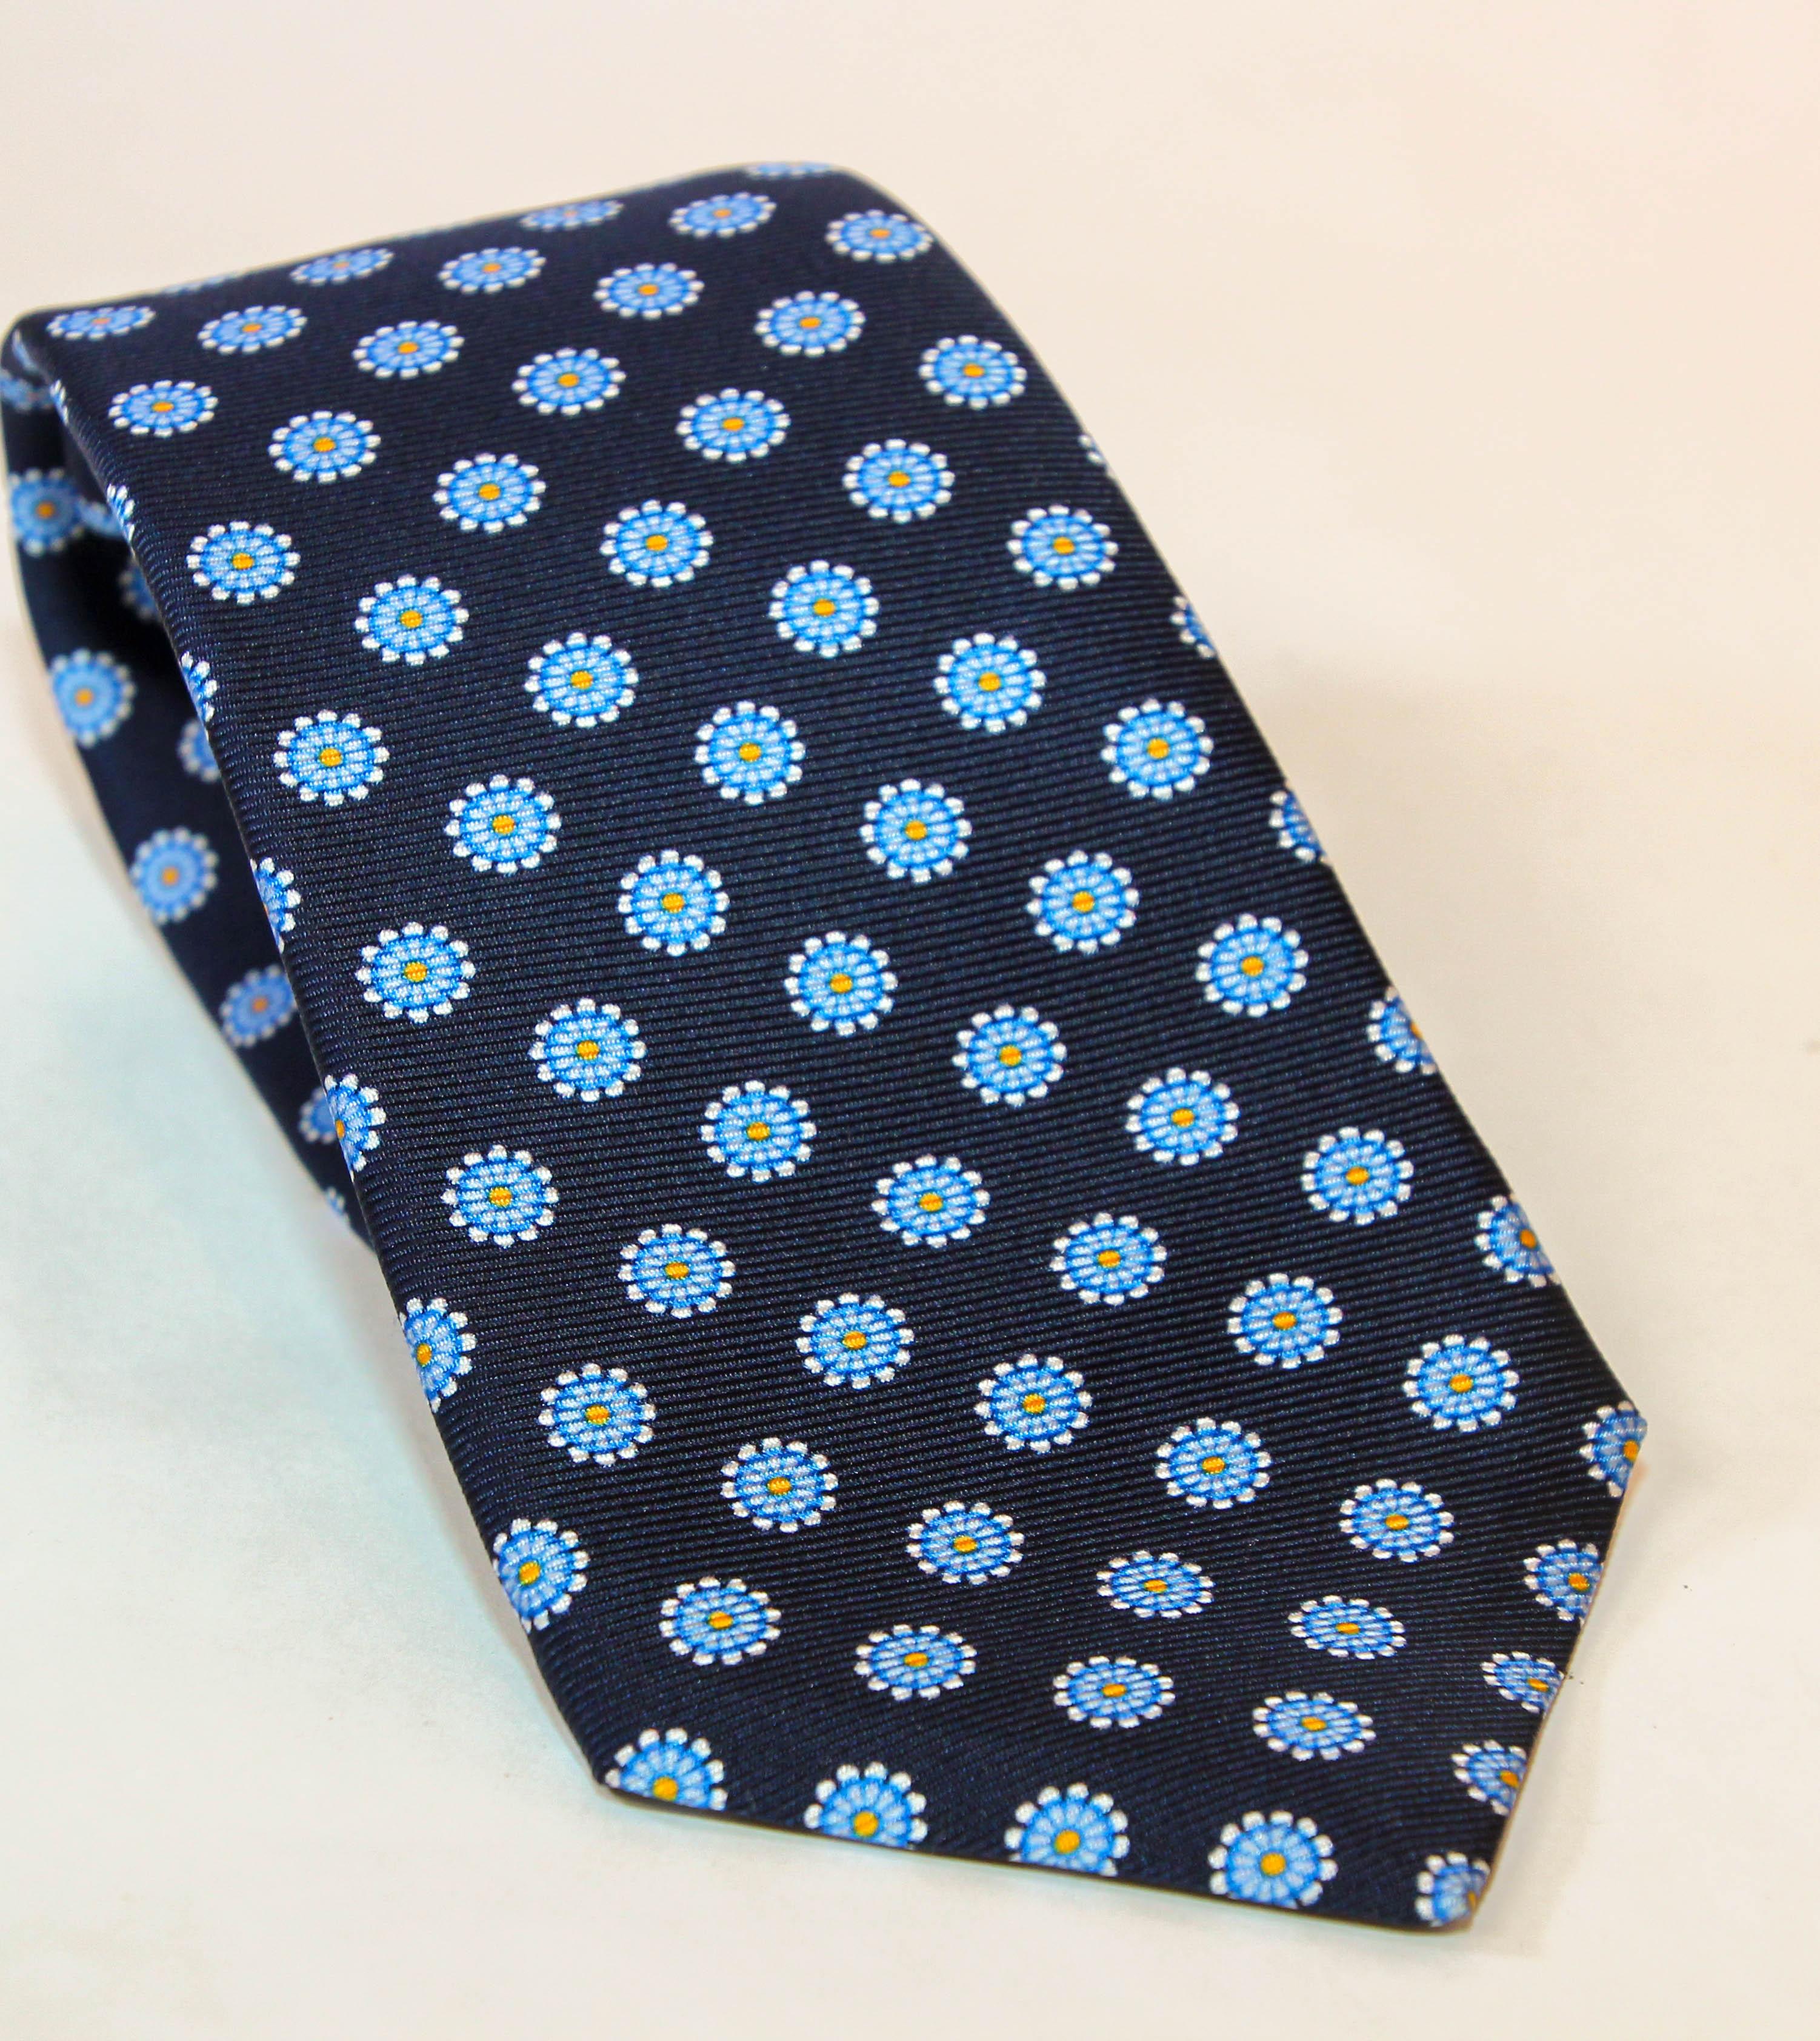 Cravate en soie bleue de KITON.
Cette magnifique cravate est disponible en bleu dans un sergé de soie avec un imprimé abstrait. Fabriquées en Italie. 
Très bon état, non utilisé, avec étiquette d'origine.
Dimensions : Largeur : 3.5 Longueur : 55